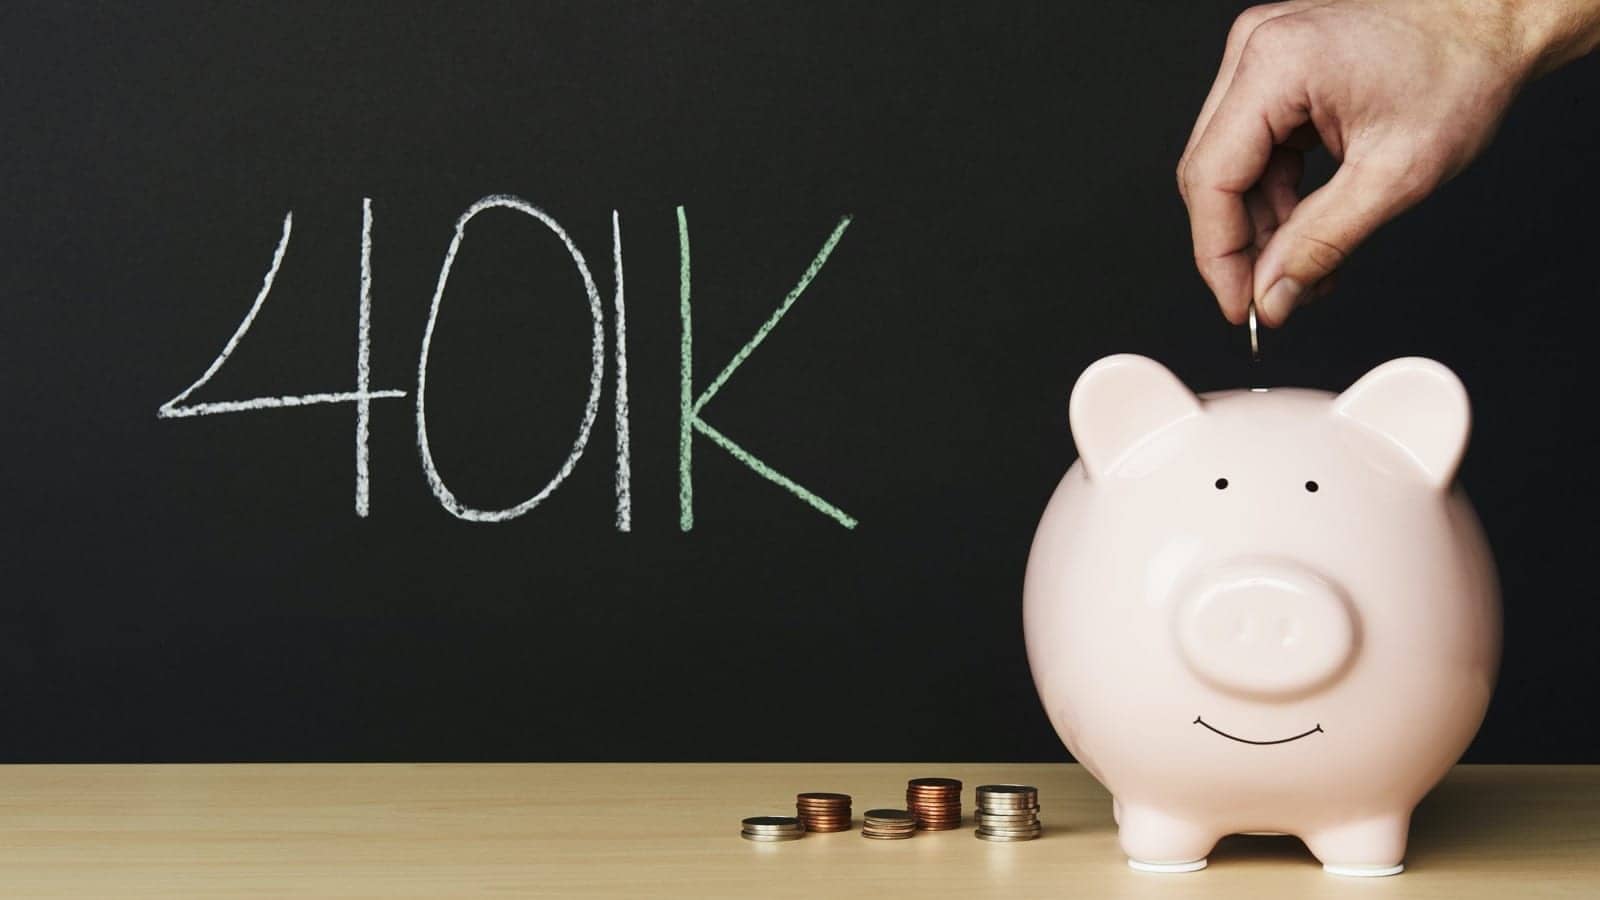 401k-Piggy-Bank-Savings.jpg